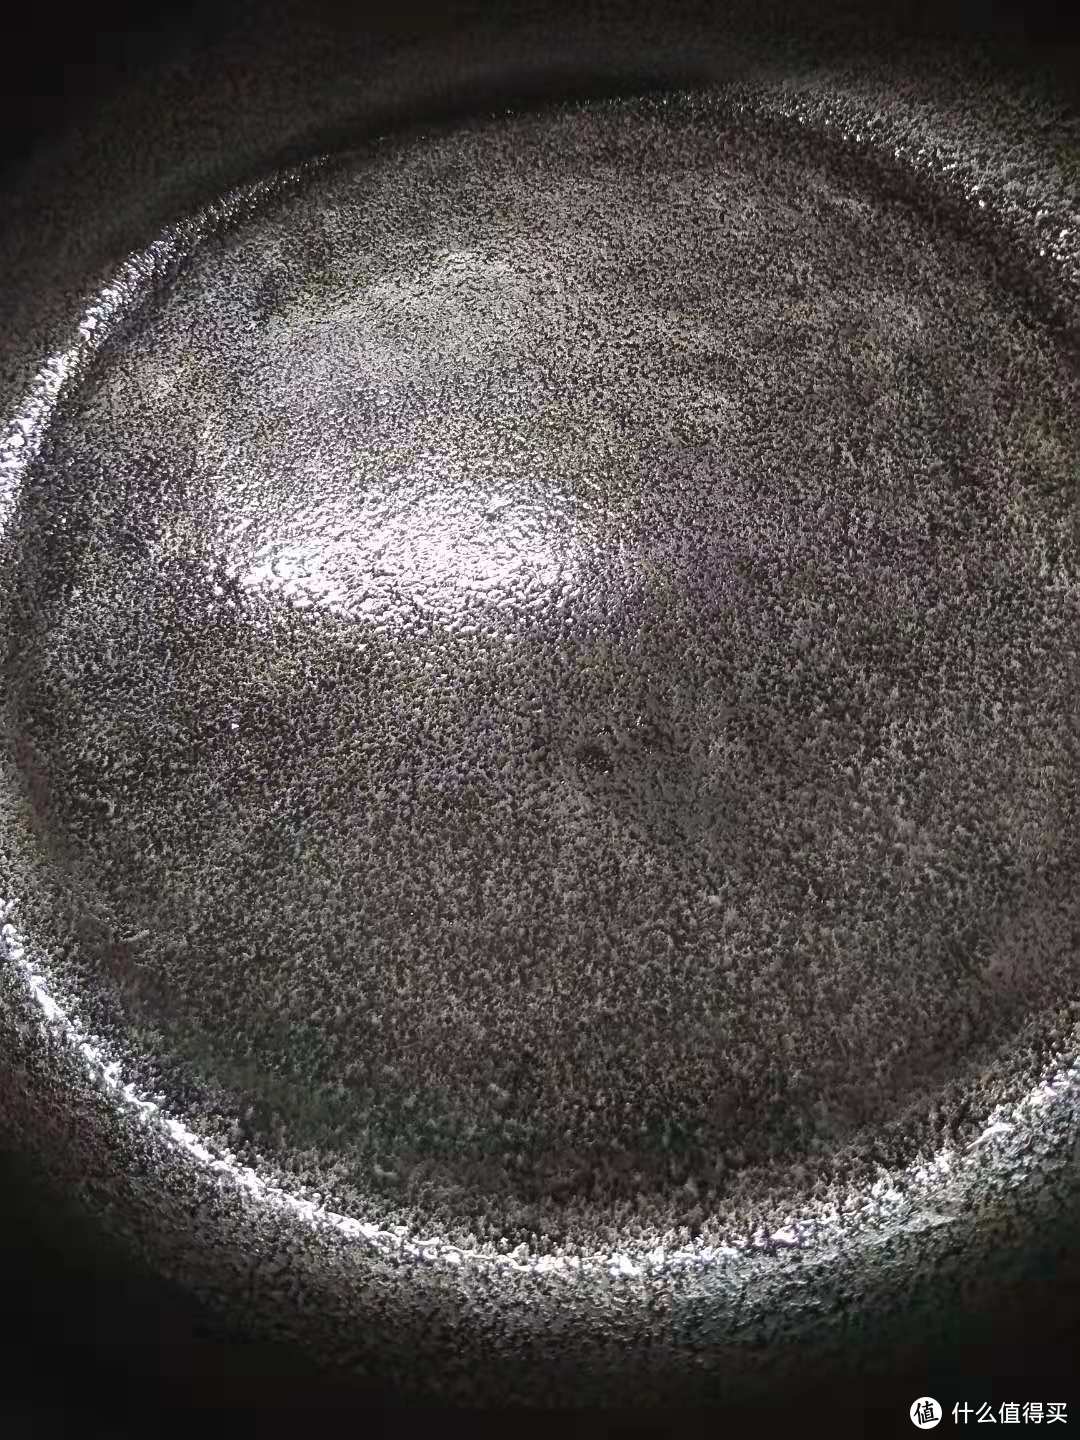 砂纸打磨后用热猪油涂抹后的铸铁锅底